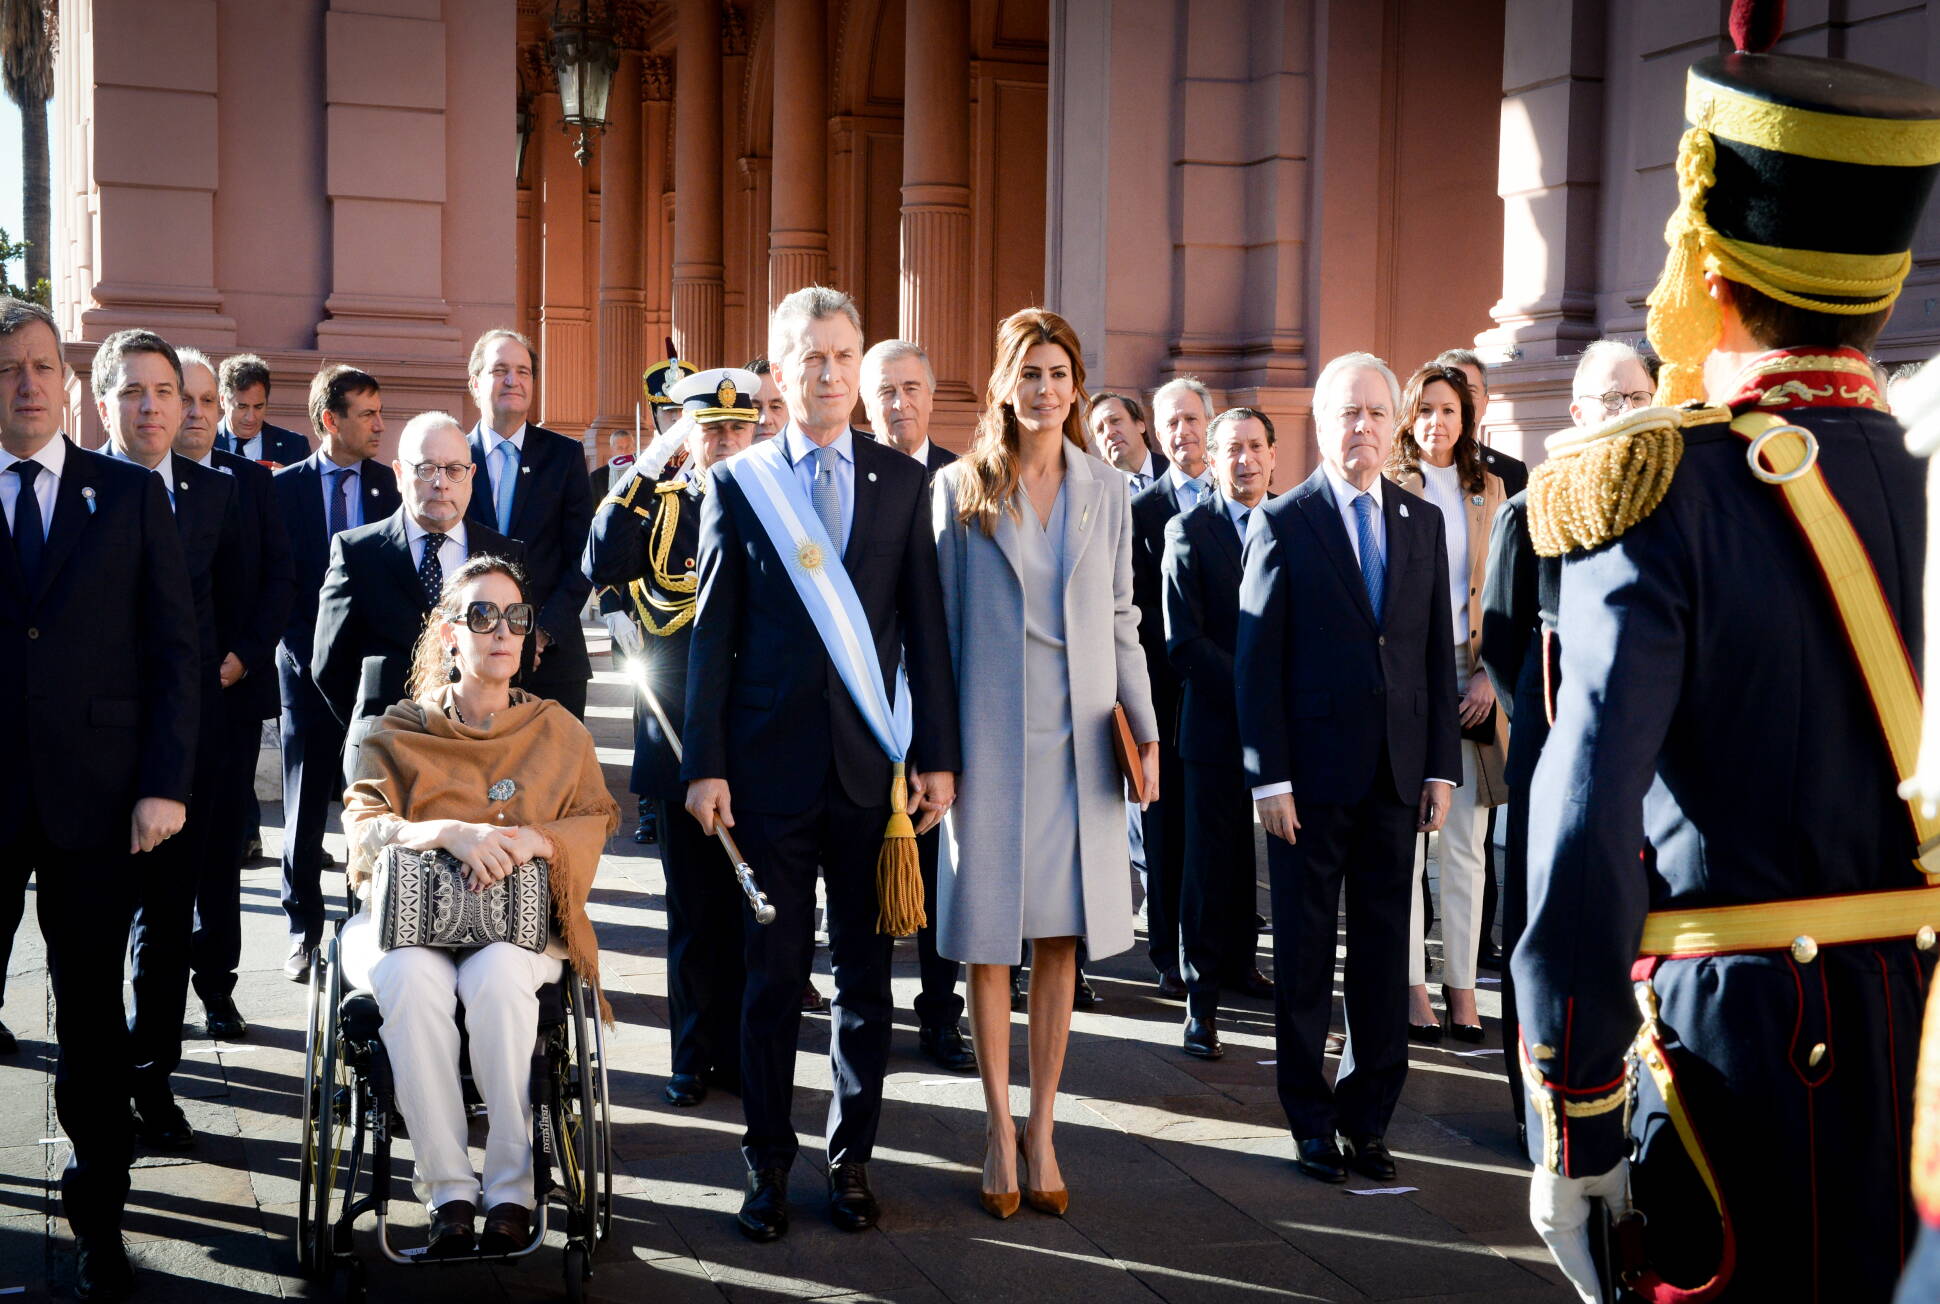 El presidente Macri asistió al Tedeum en la Catedral Metropolitana por el 25 de Mayo